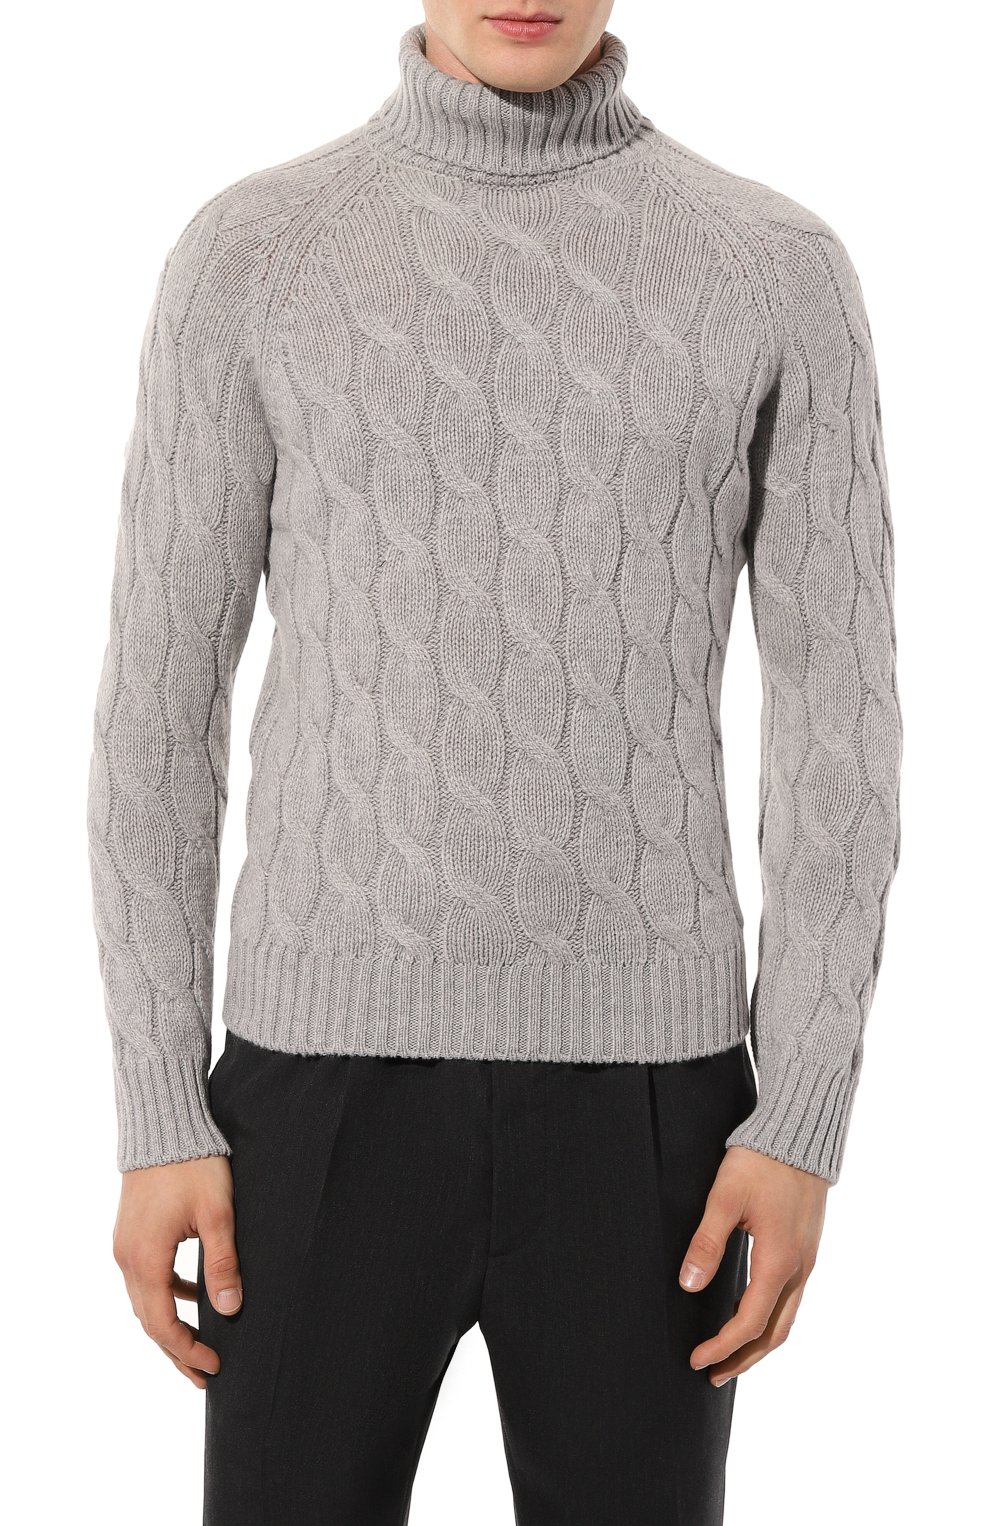 Шерстяной свитер Gran Sasso 13117/22622, цвет серый, размер 46 13117/22622 - фото 3